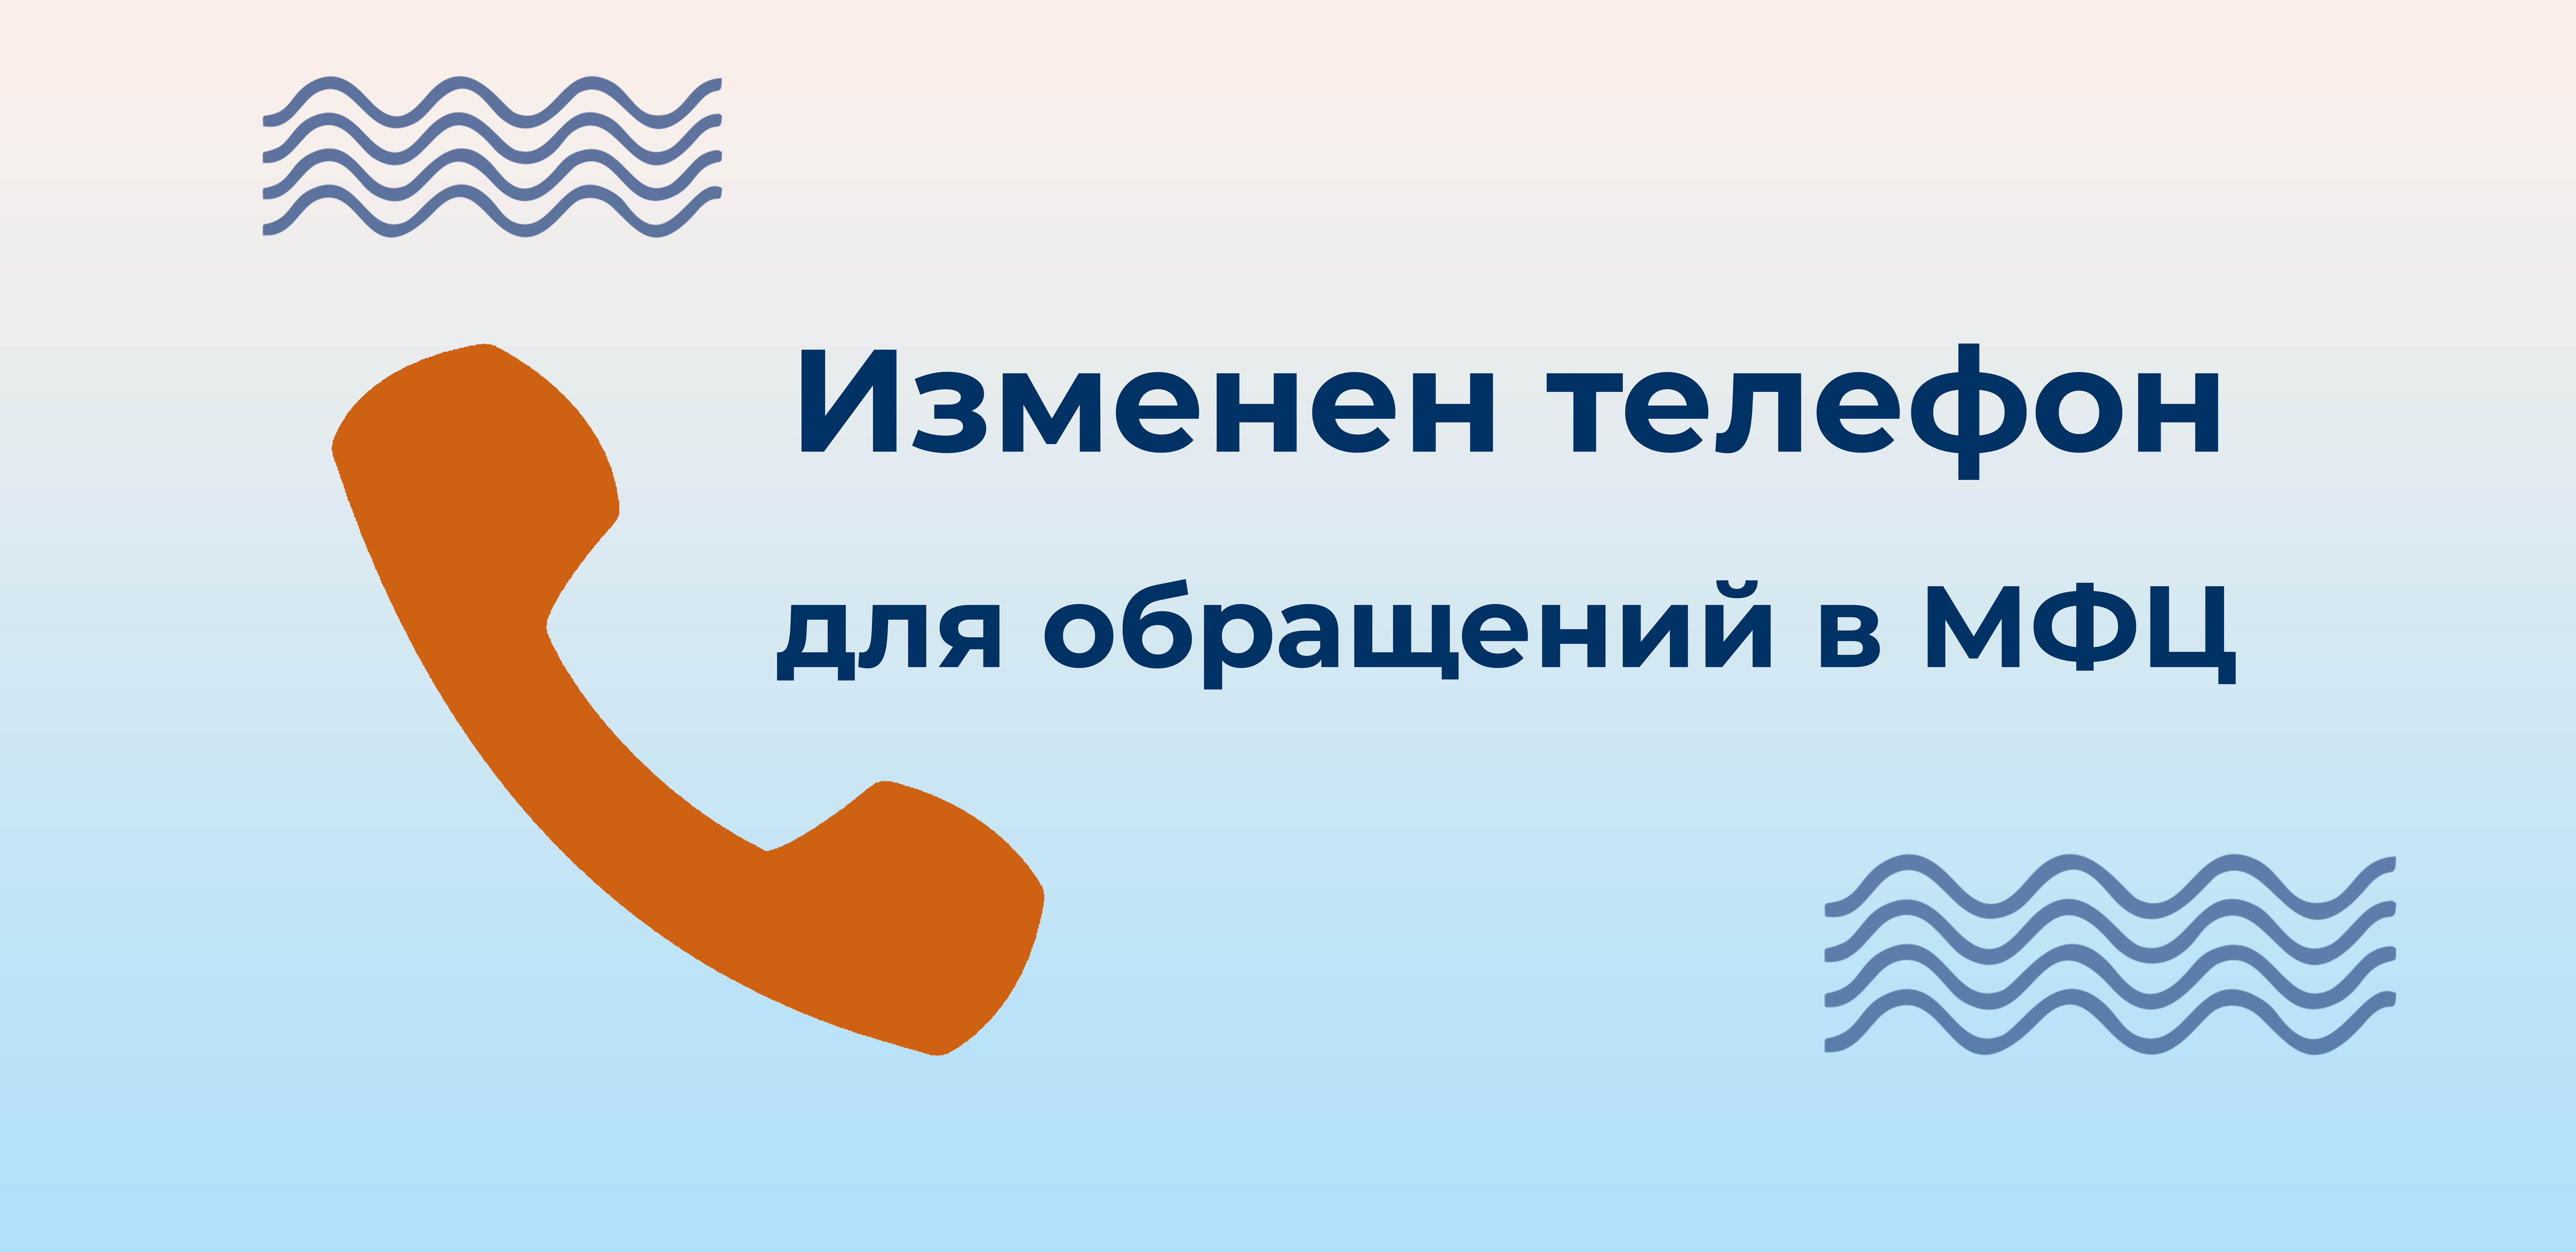 Информируем об изменении телефона для обращения в МФЦ из регионов РФ